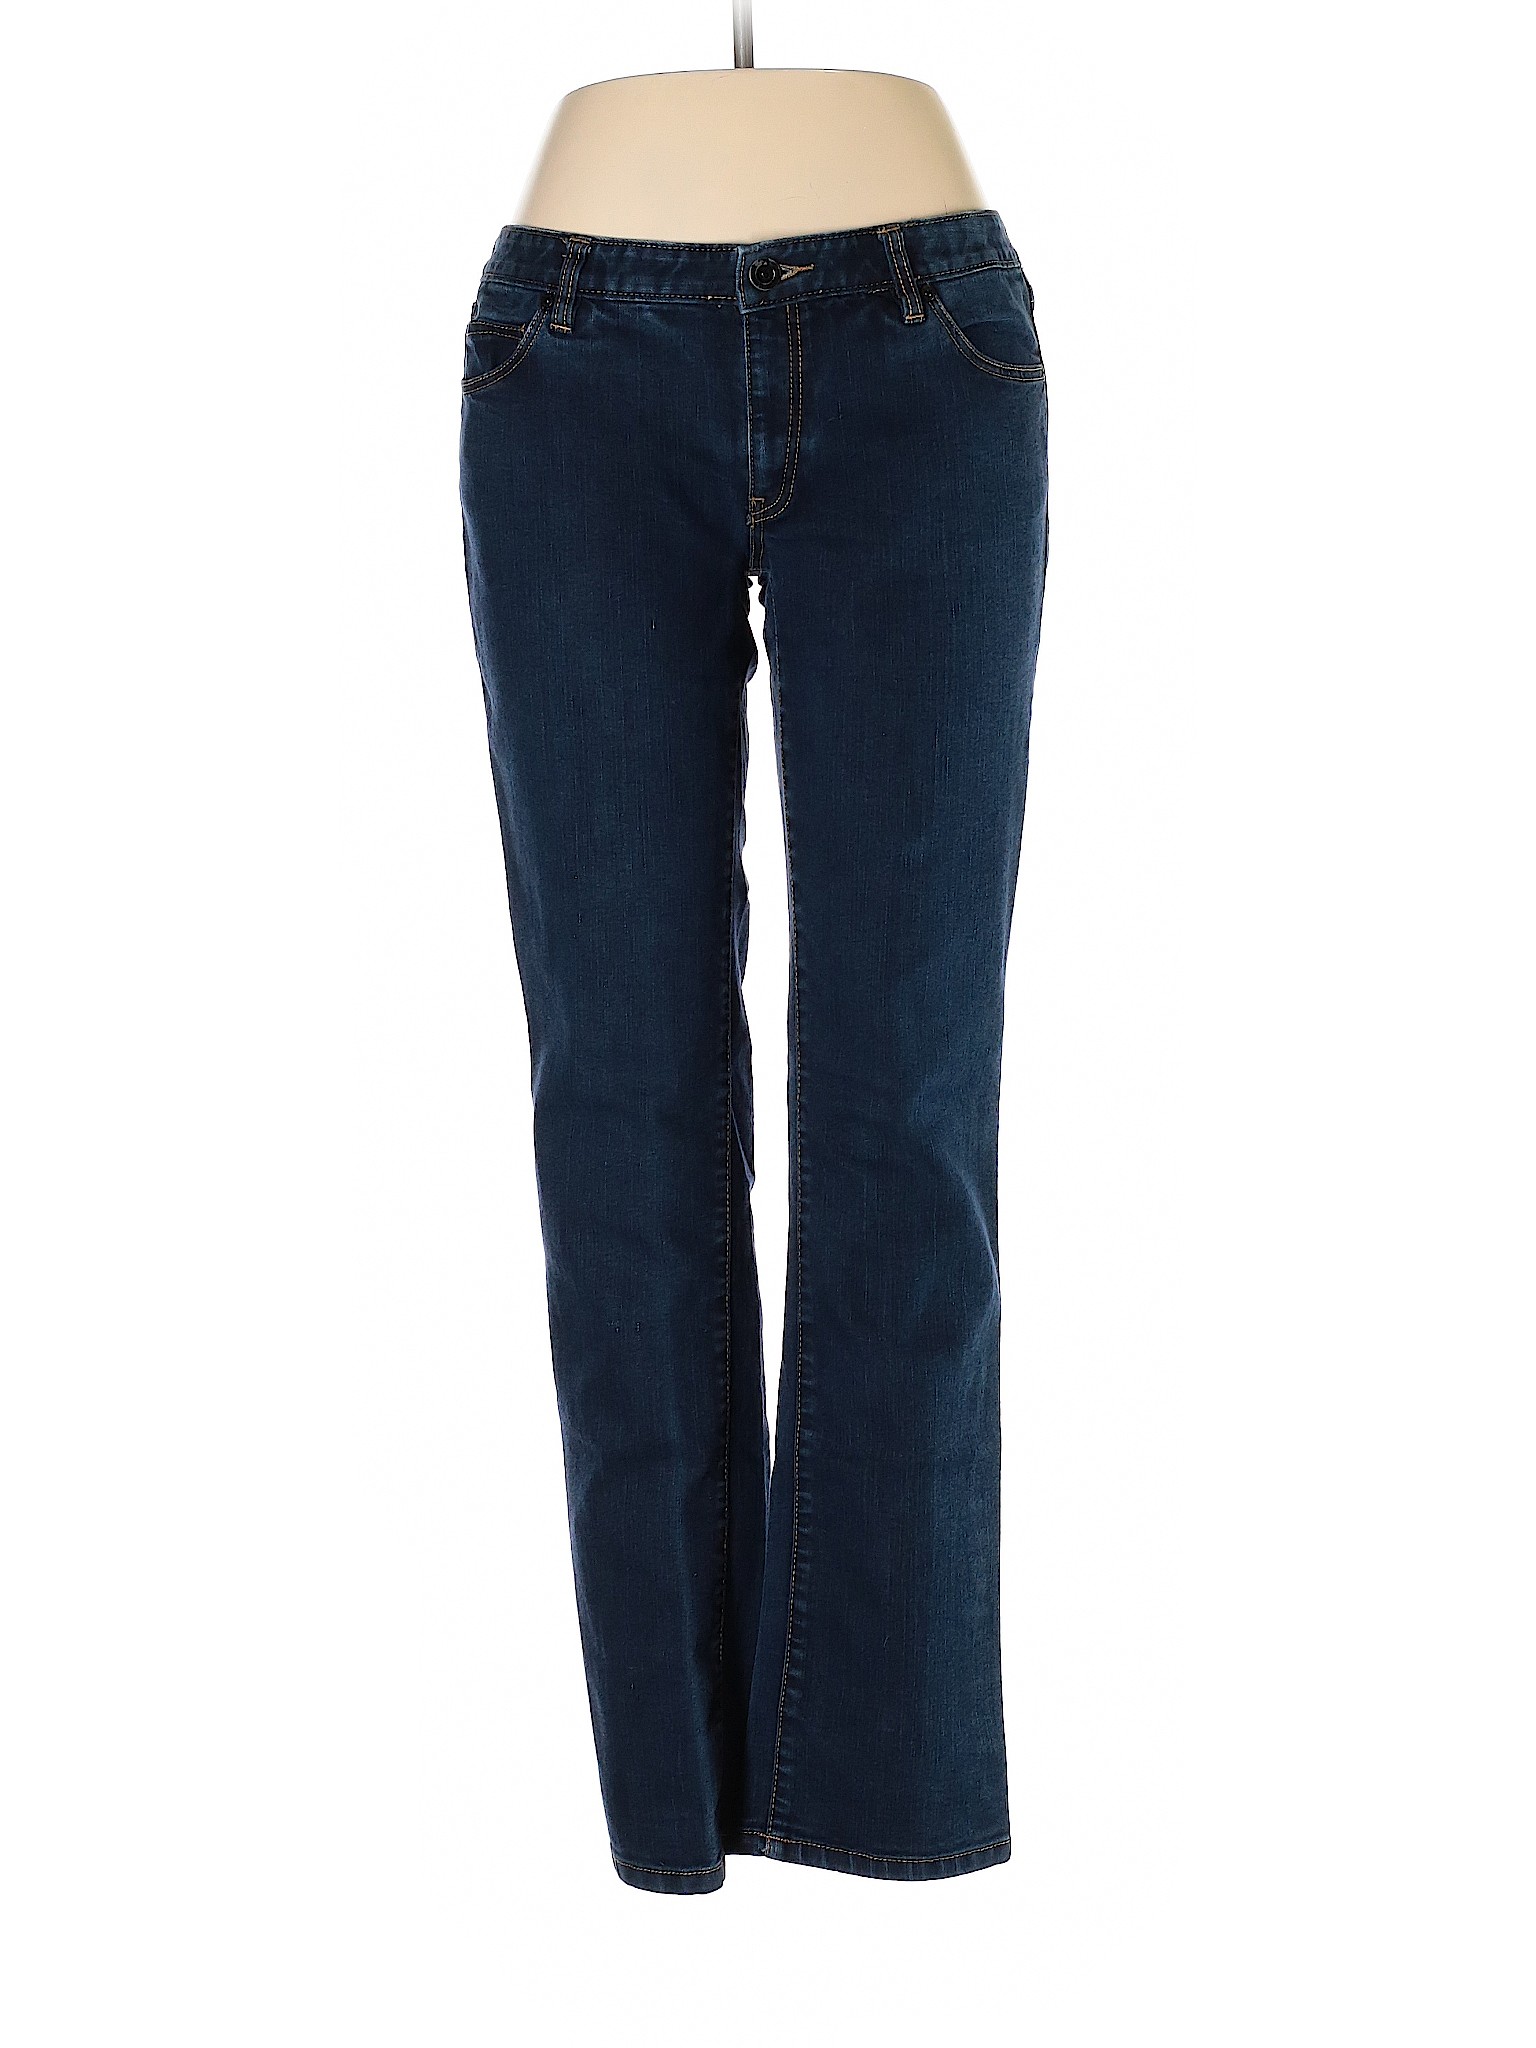 CALVIN KLEIN JEANS Women Blue Jeans 32W | eBay